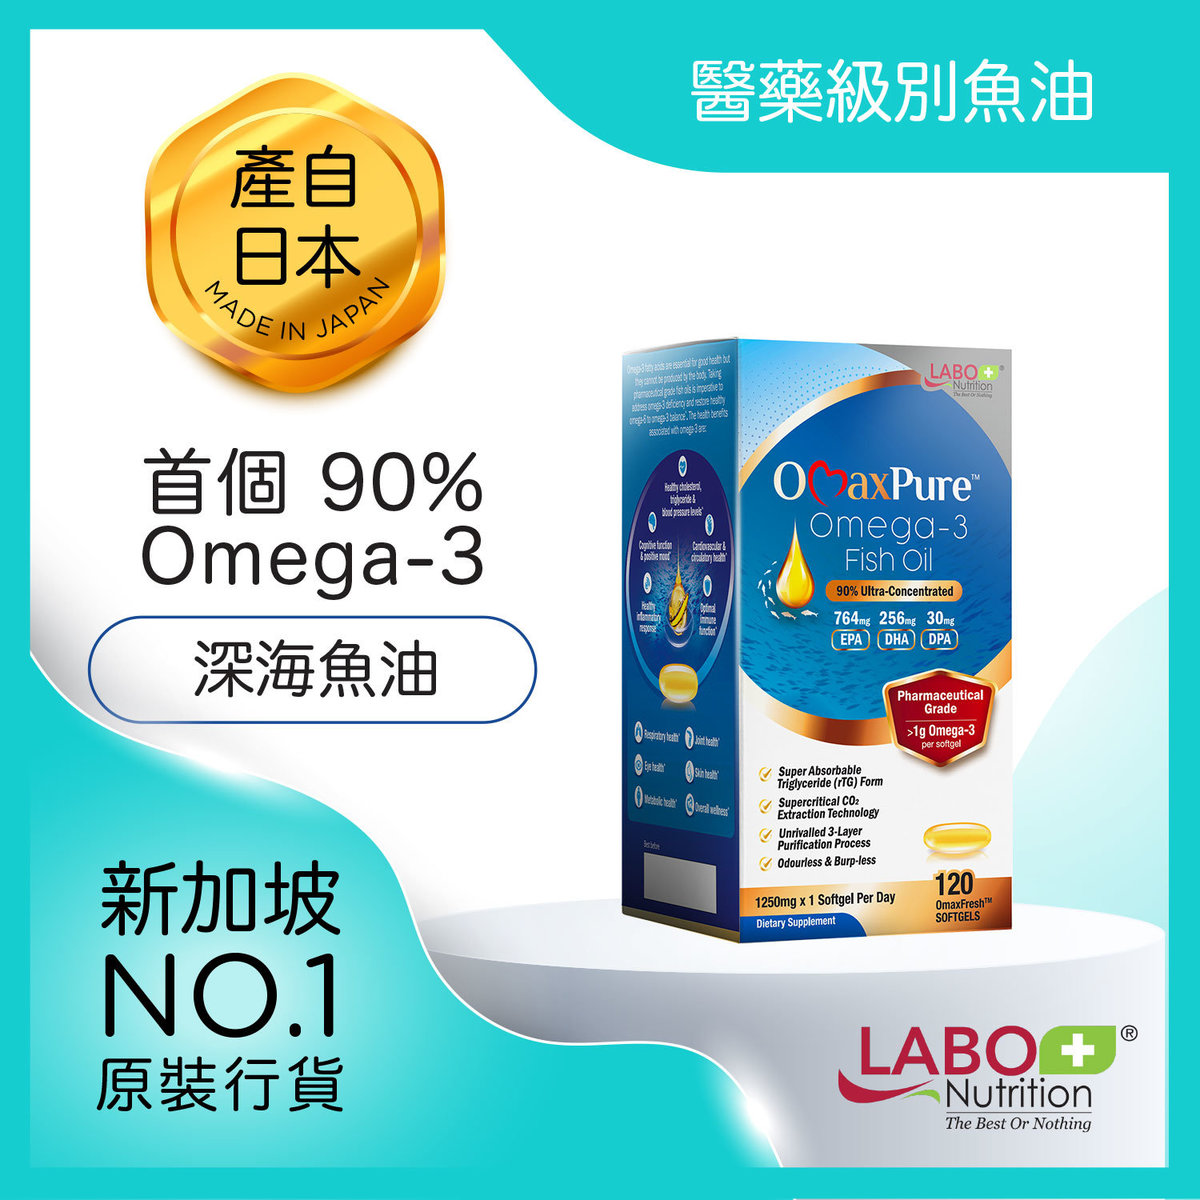 [4個月]OmaxPure精純深海魚油 - 90%奧米茄-3 Omega 3 | 無魚腥味 | 醫藥級別 | DHA EPA